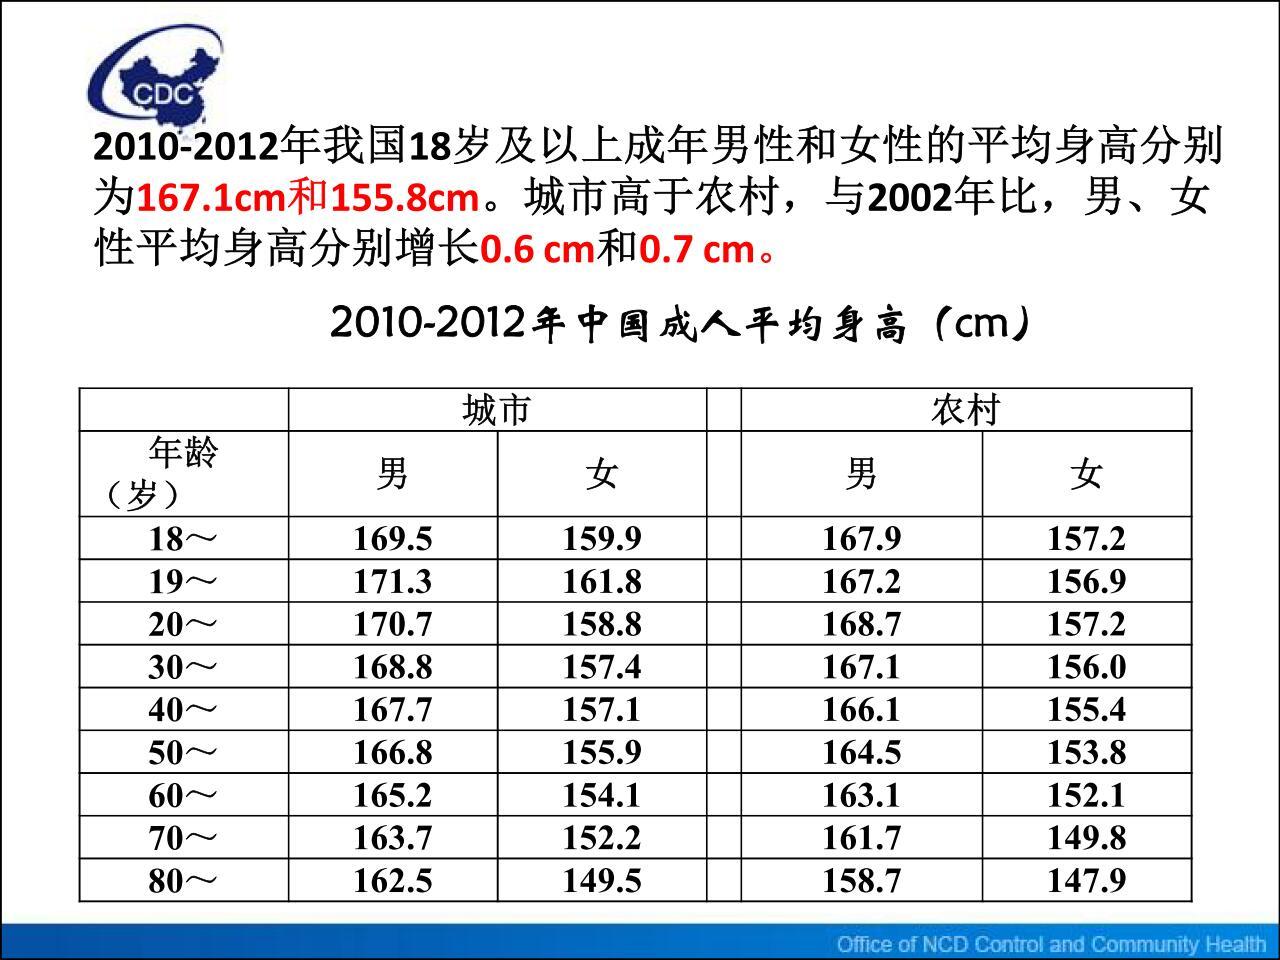 中国0-18岁儿童青少年身高、体重百分位数值表和标准差单位数值表-京东健康